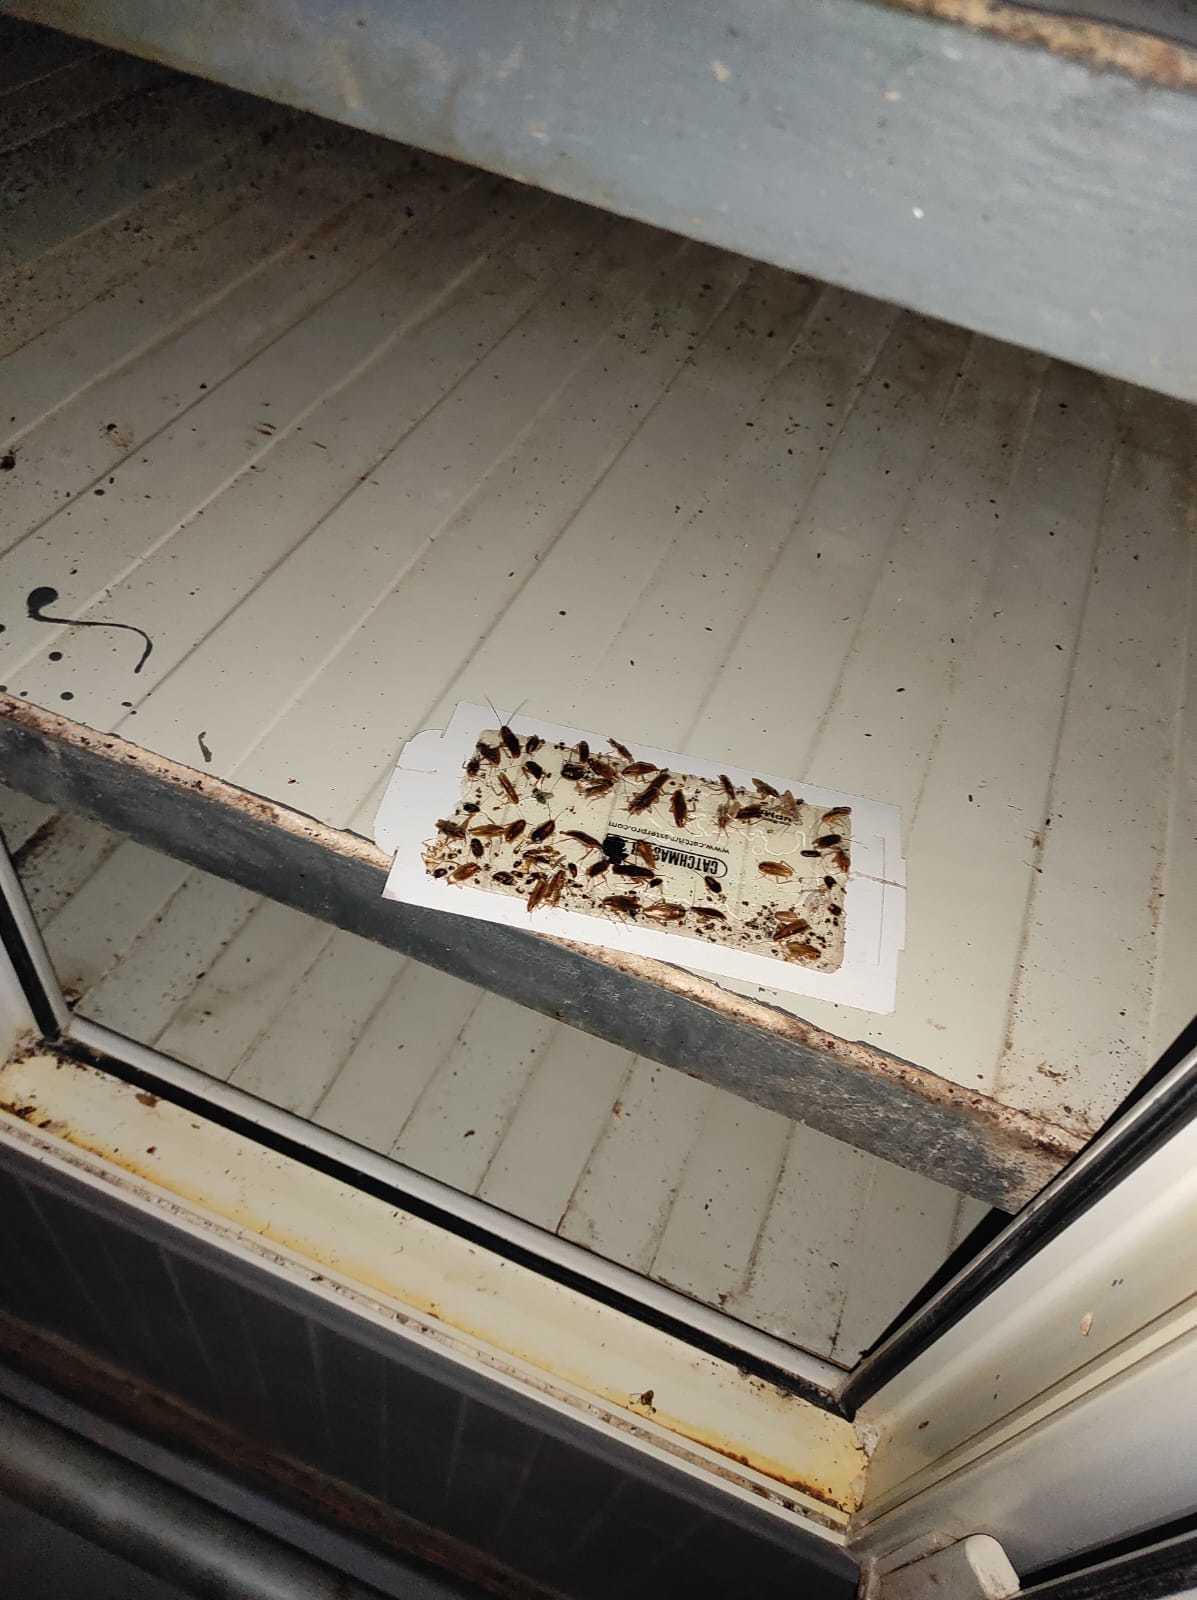 Două fabrici de pâine din Giurgiu au fost închise de ANPC, după ce comisarii au găsit mizerie, gândaci, produse expirate sau ţinute la temperaturi ridicate. Au fost date amenzi de 45.000 de lei – FOTO, VIDEO